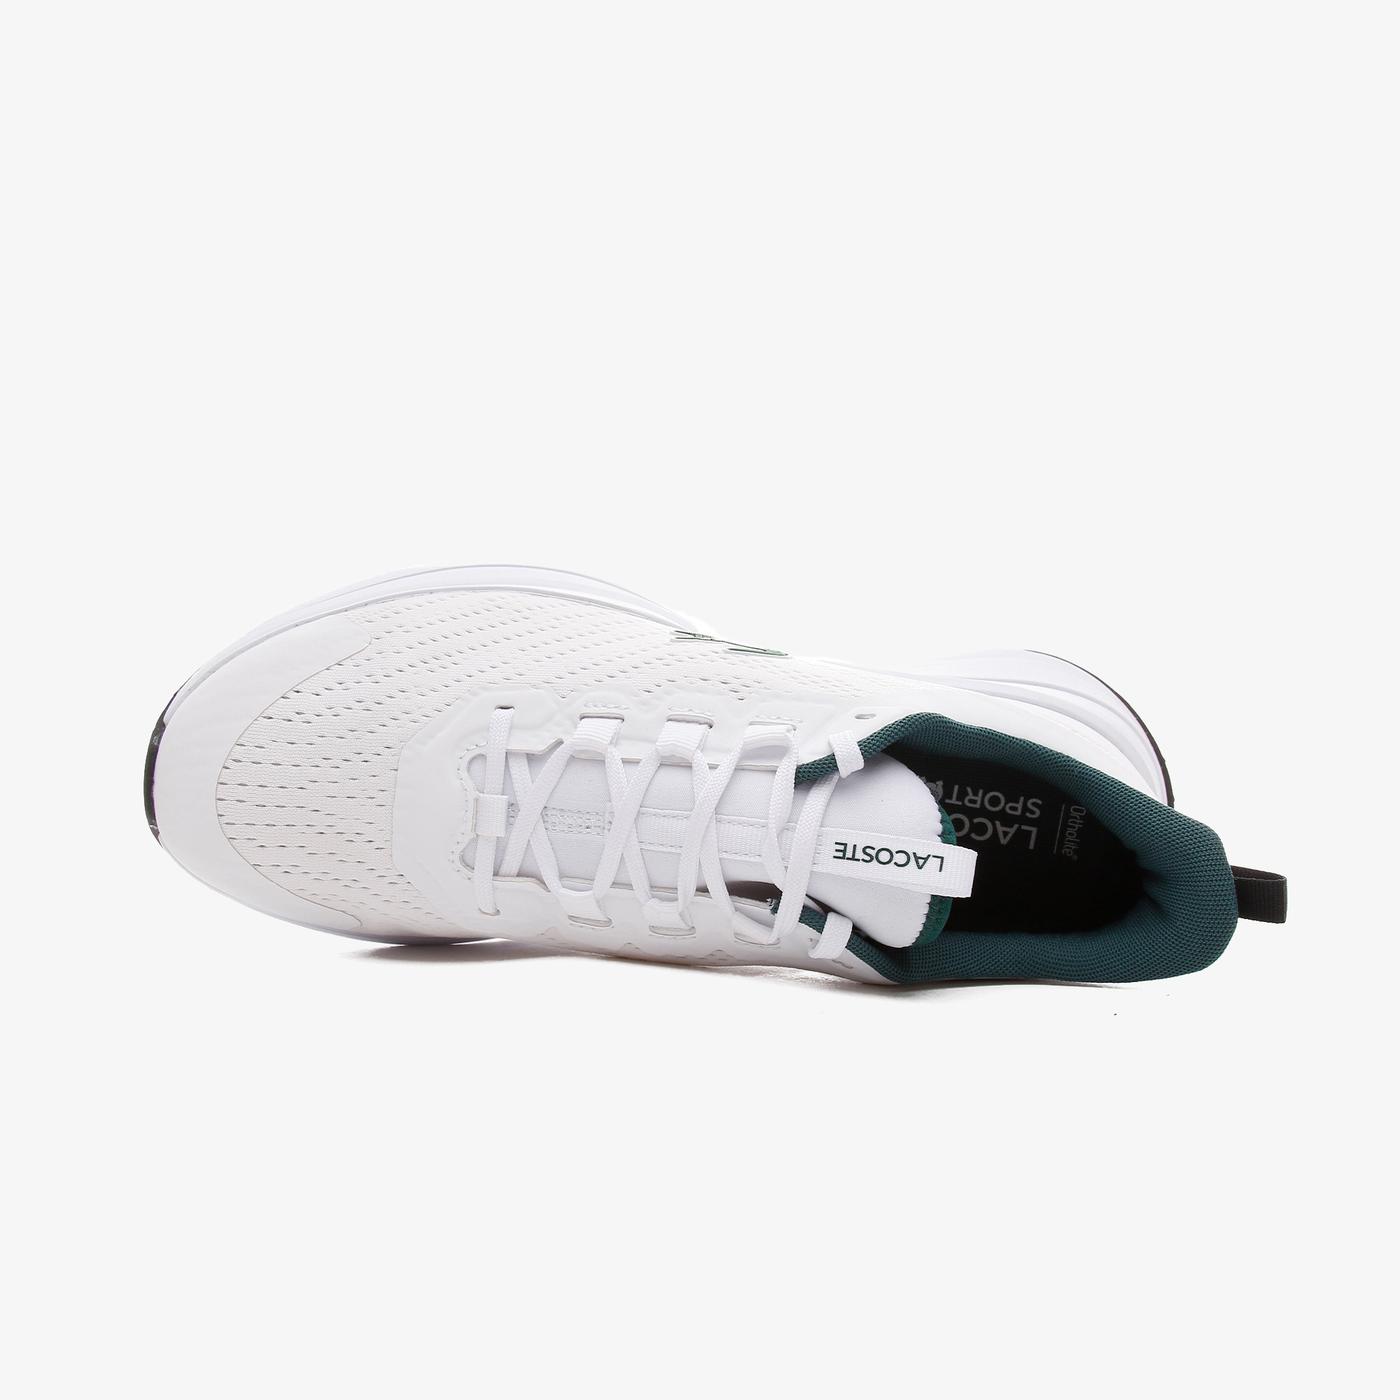 Lacoste Run Spin Textile Erkek Beyaz Sneaker